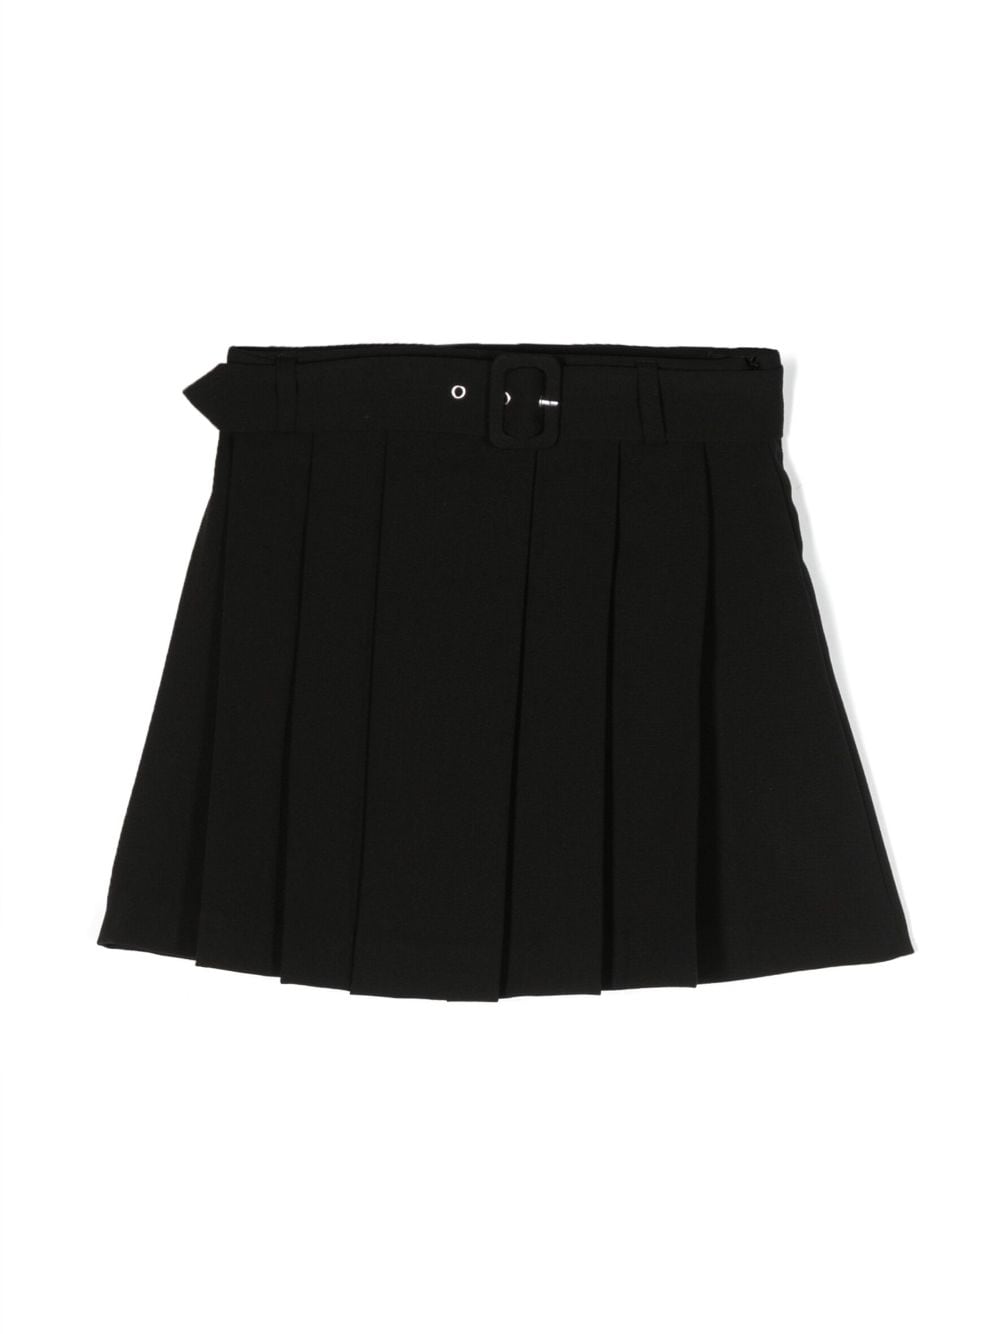 Black skirt for girls